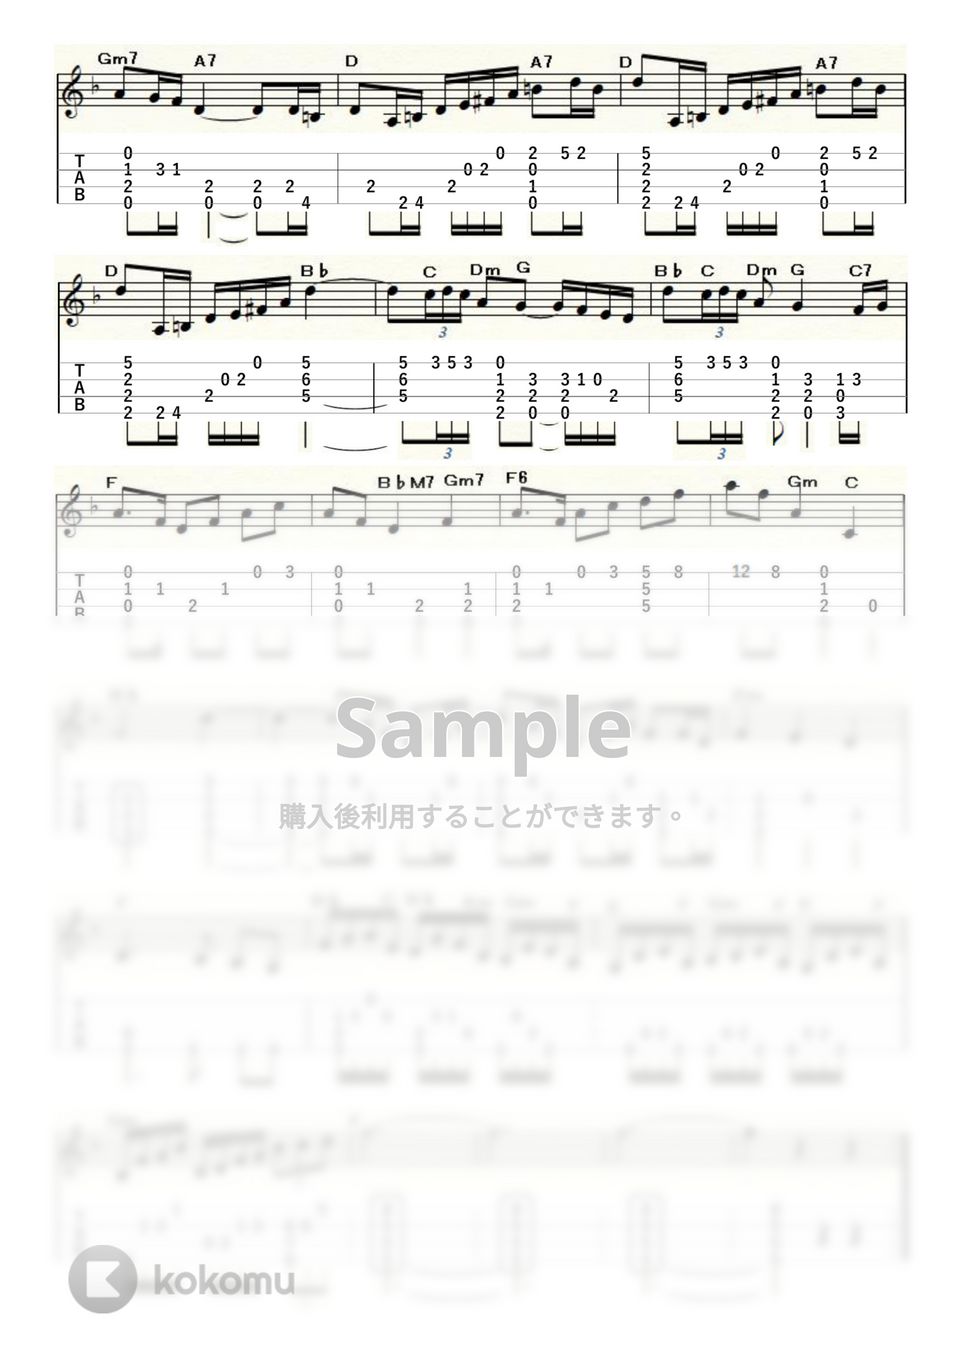 ドビュッシー - 亜麻色の髪の乙女 (ｳｸﾚﾚｿﾛ / Low-G / 中級) by ukulelepapa